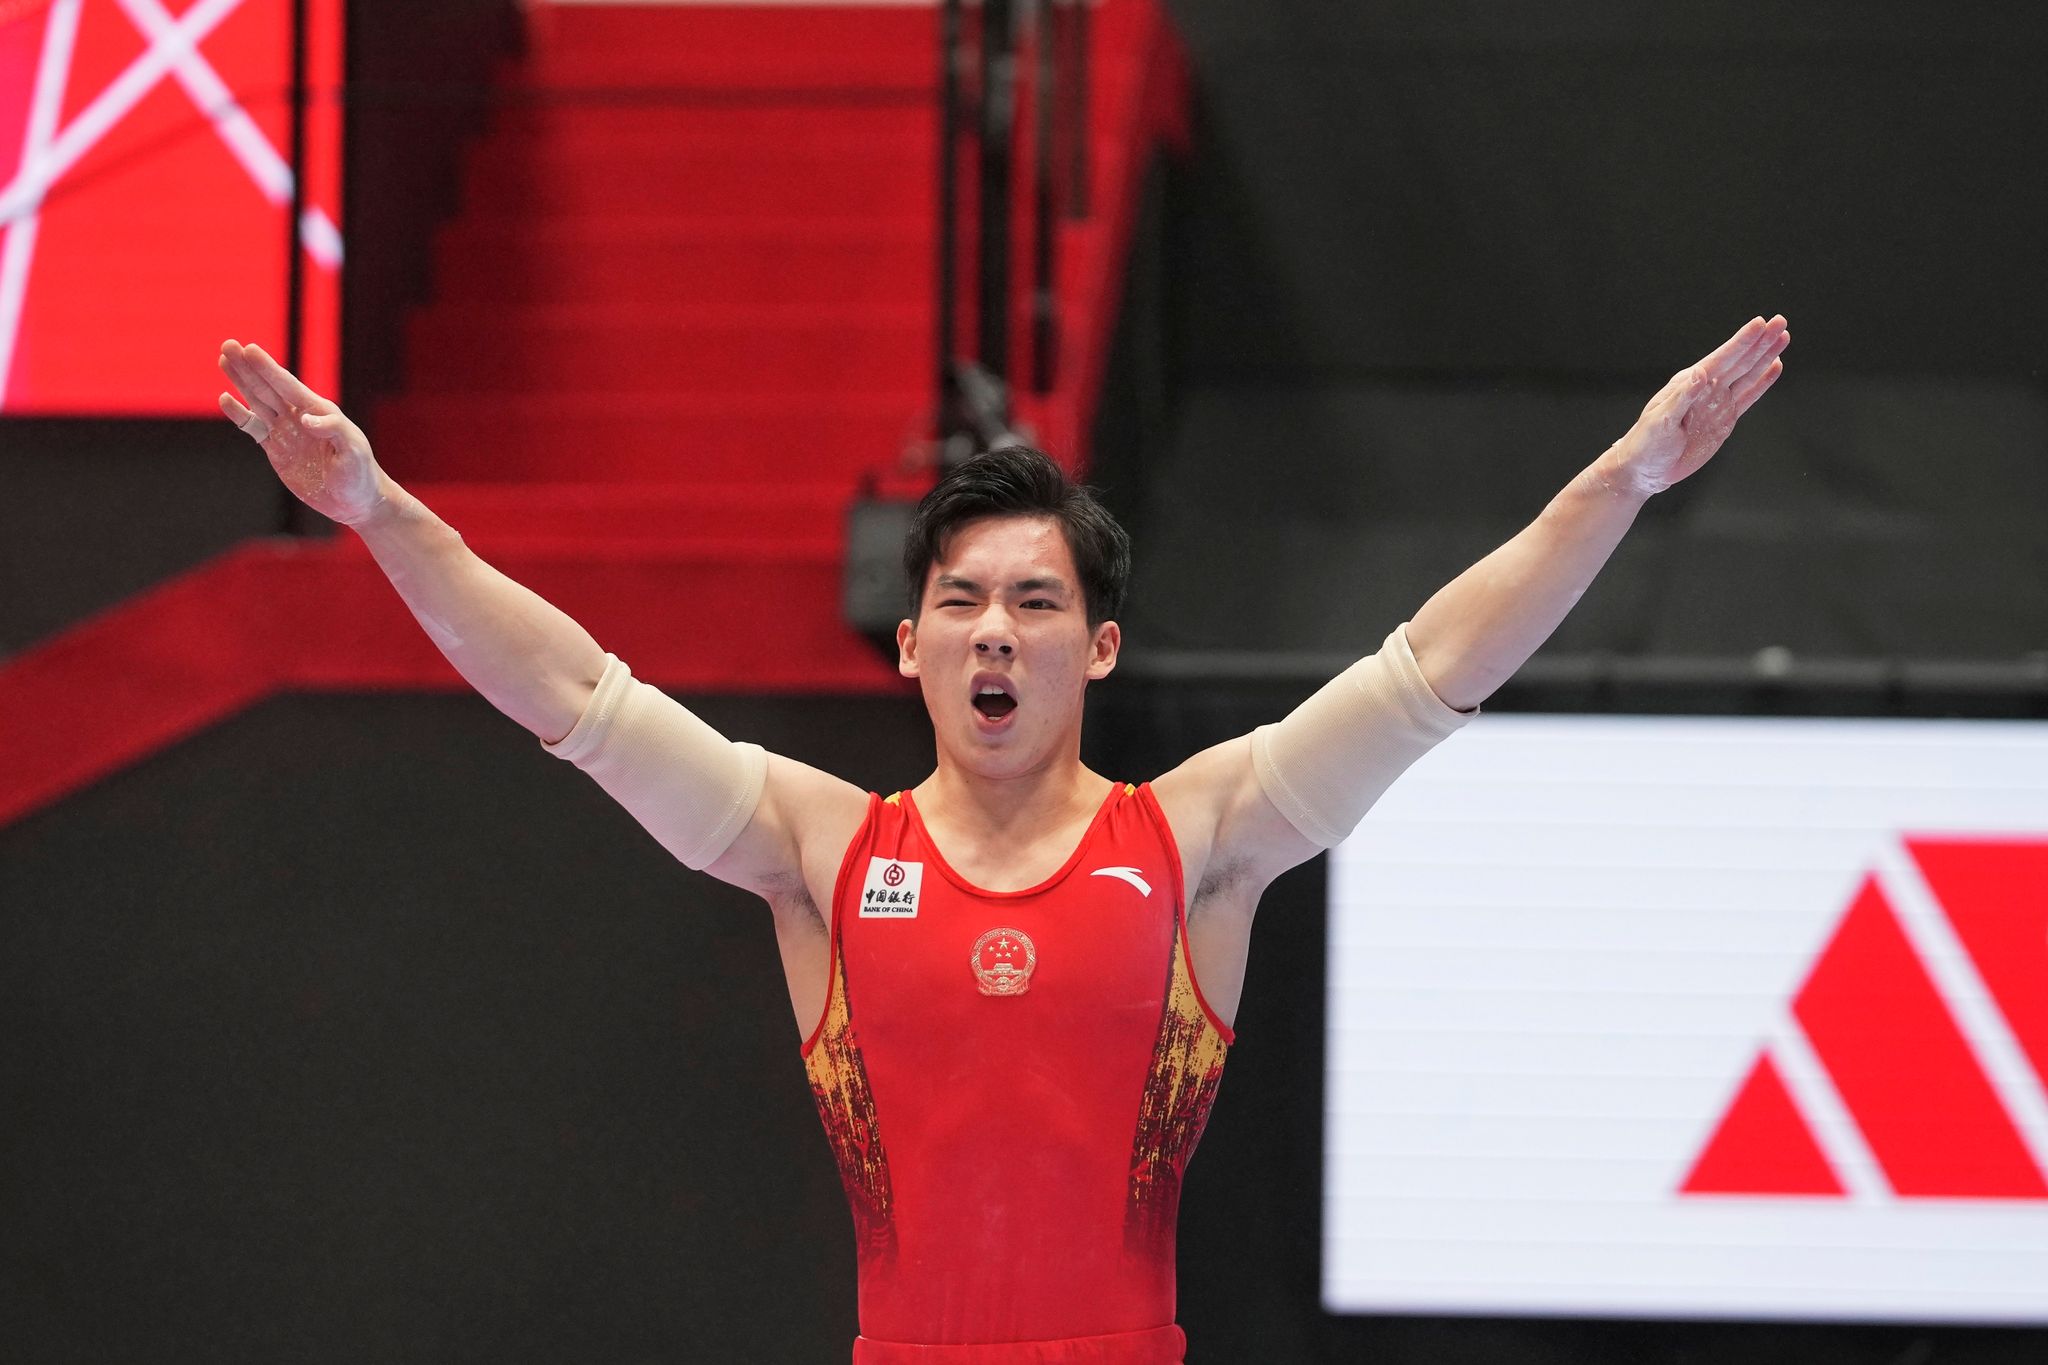 Sicherte sich den WM-Titel im Mehrkampf-Turnen: Zhang Boheng.